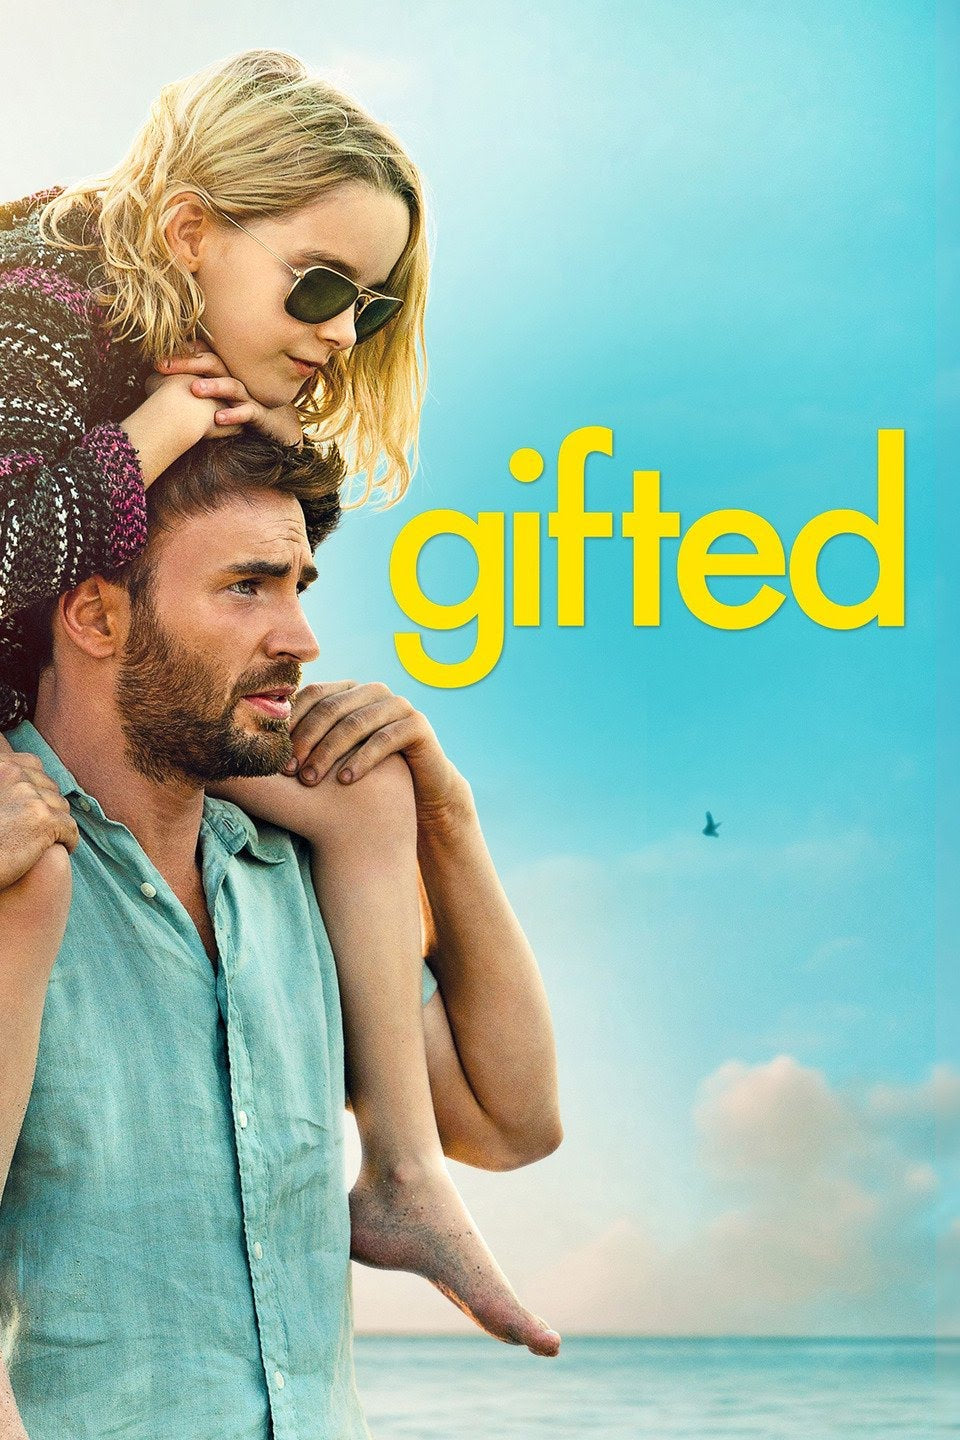 Gifted (2017) Vudu or Movies Anywhere HD code